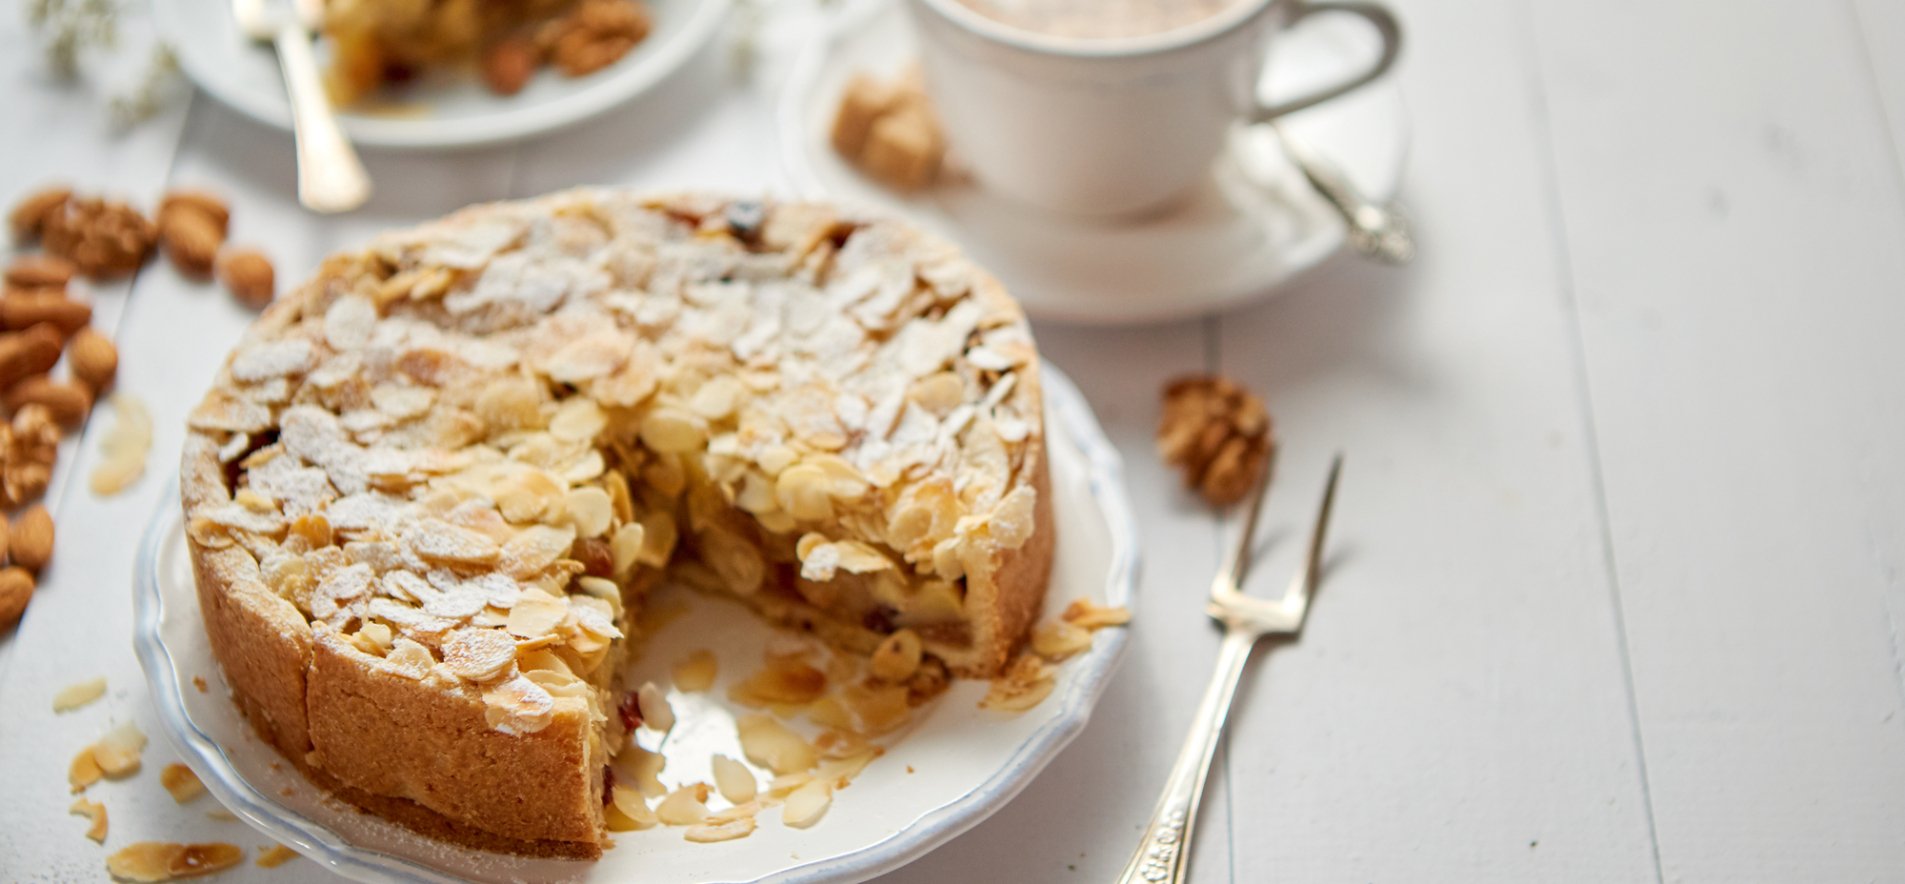 Баварський яблучний торт – як приготувати смачний десерт? (ВІДЕОРЕЦЕПТ)